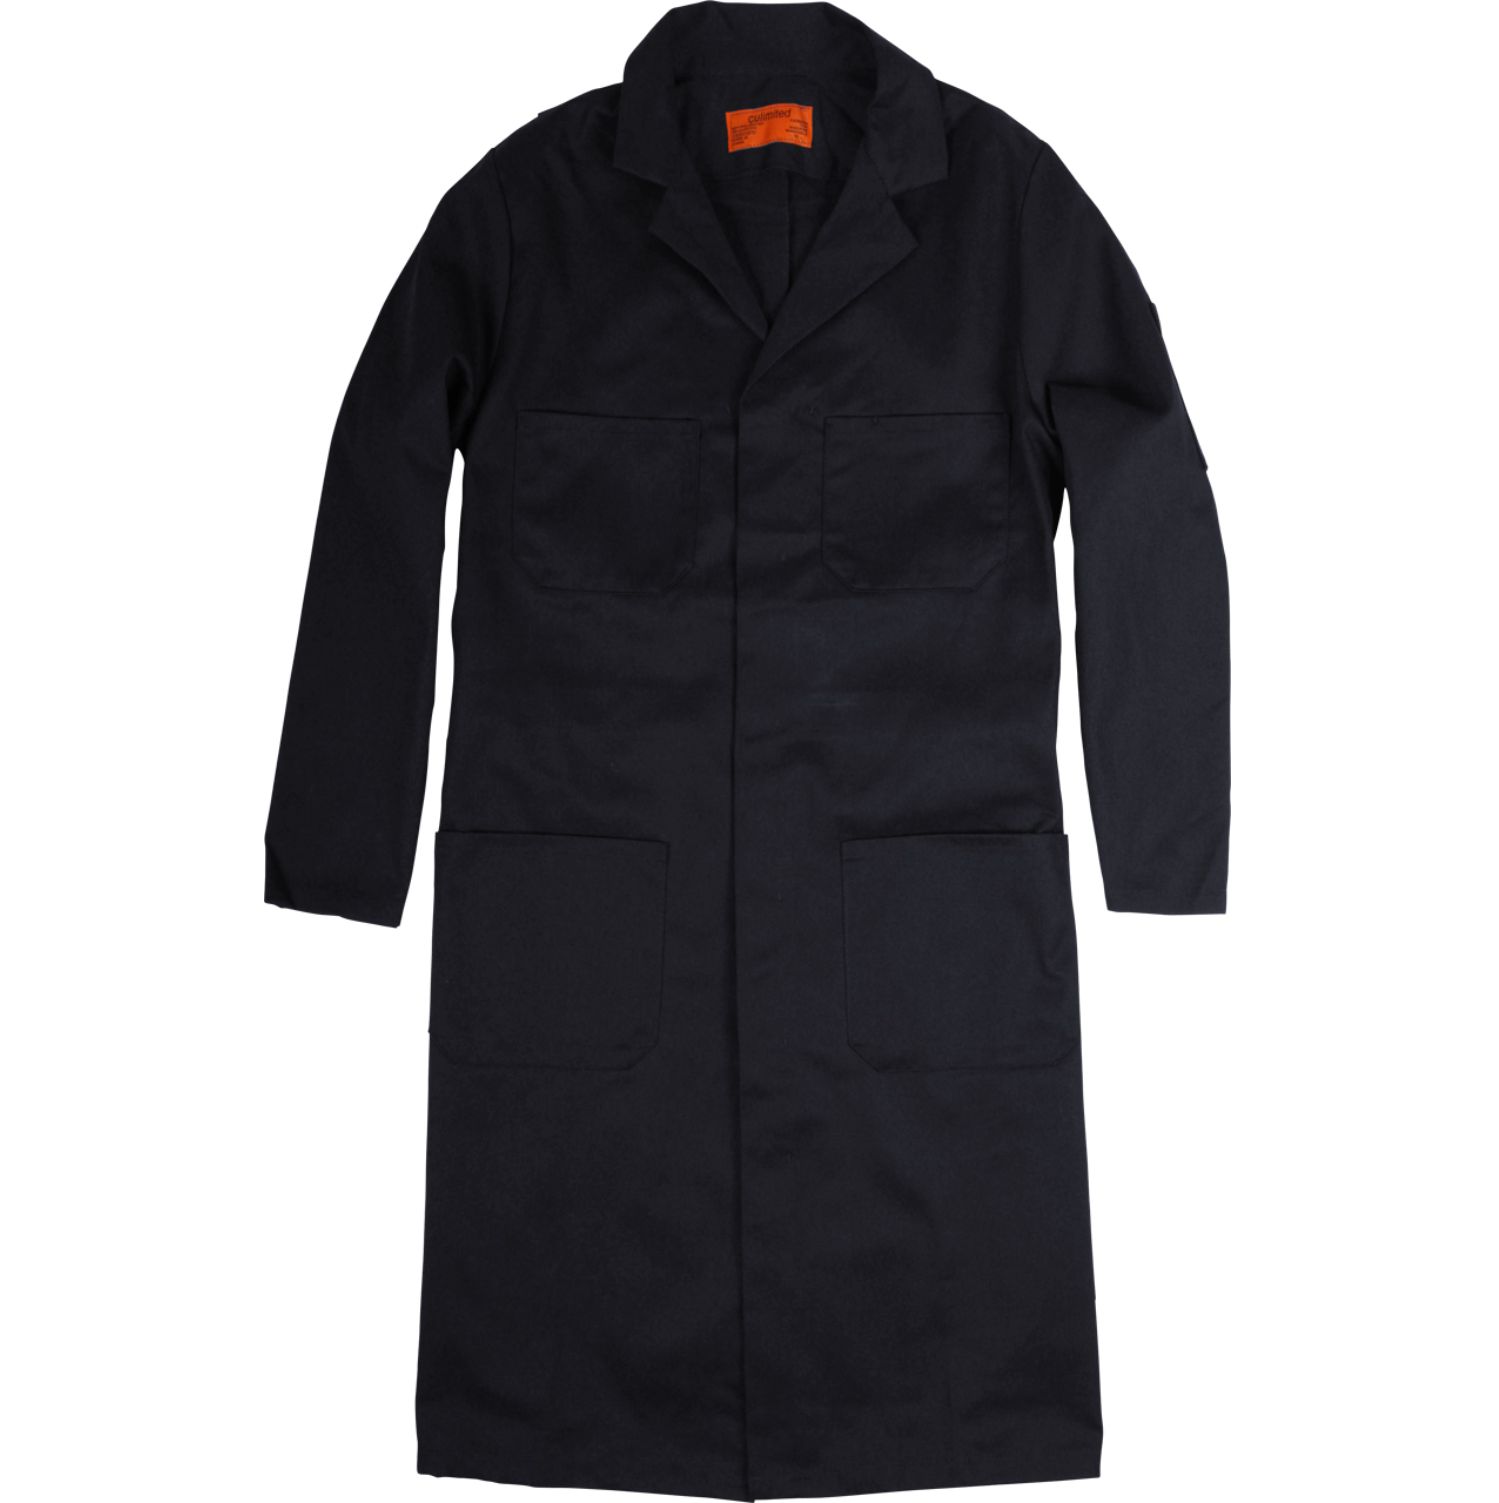 Premium Uniforms Poly/Cotton Shop Coat #S810 Black